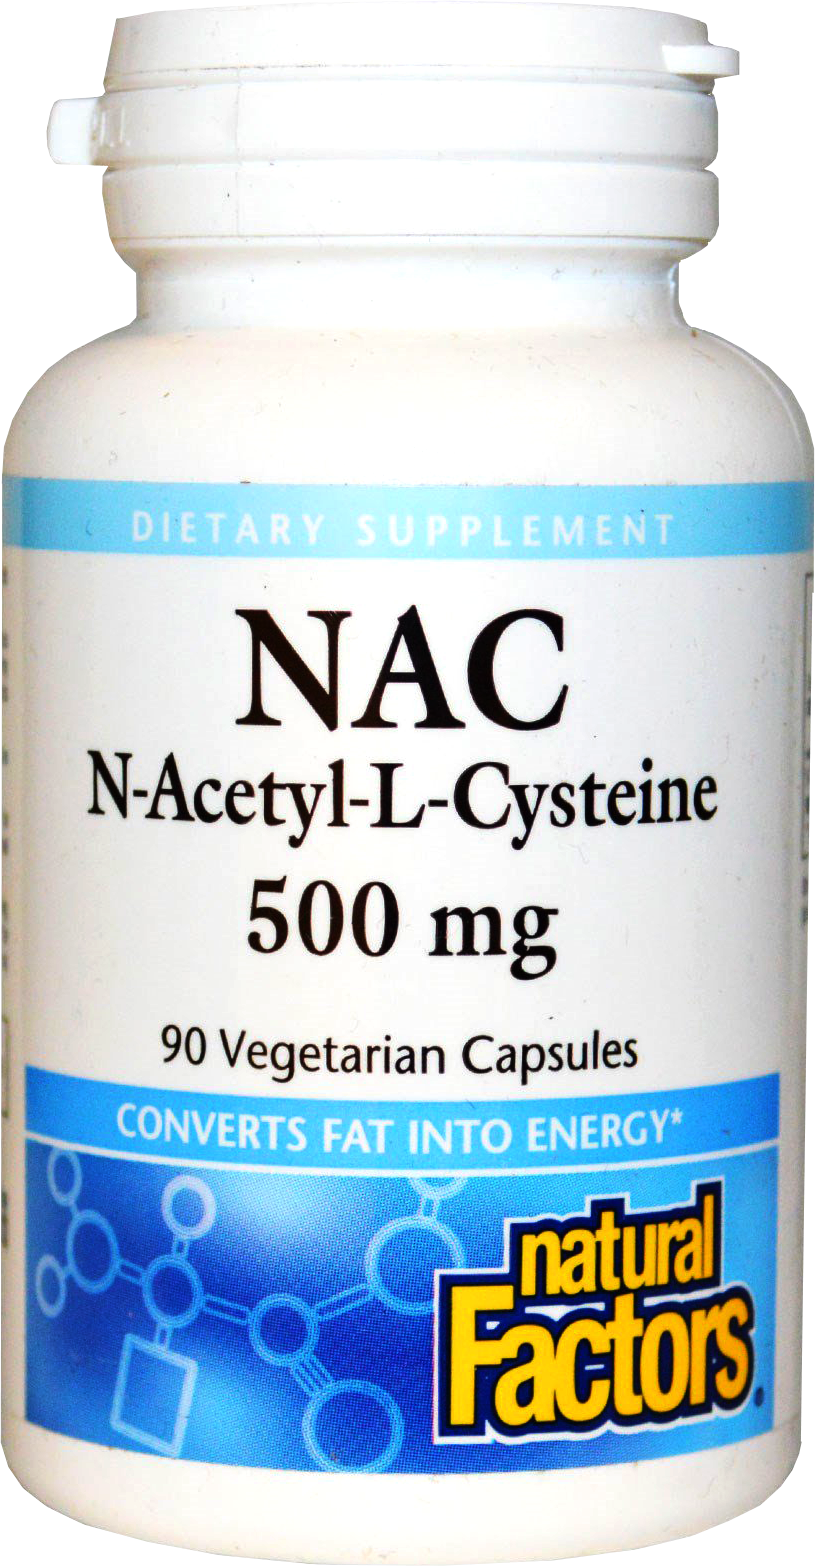 N-Acetyl L-Cysteine 500 mg - BadiZdrav.BG